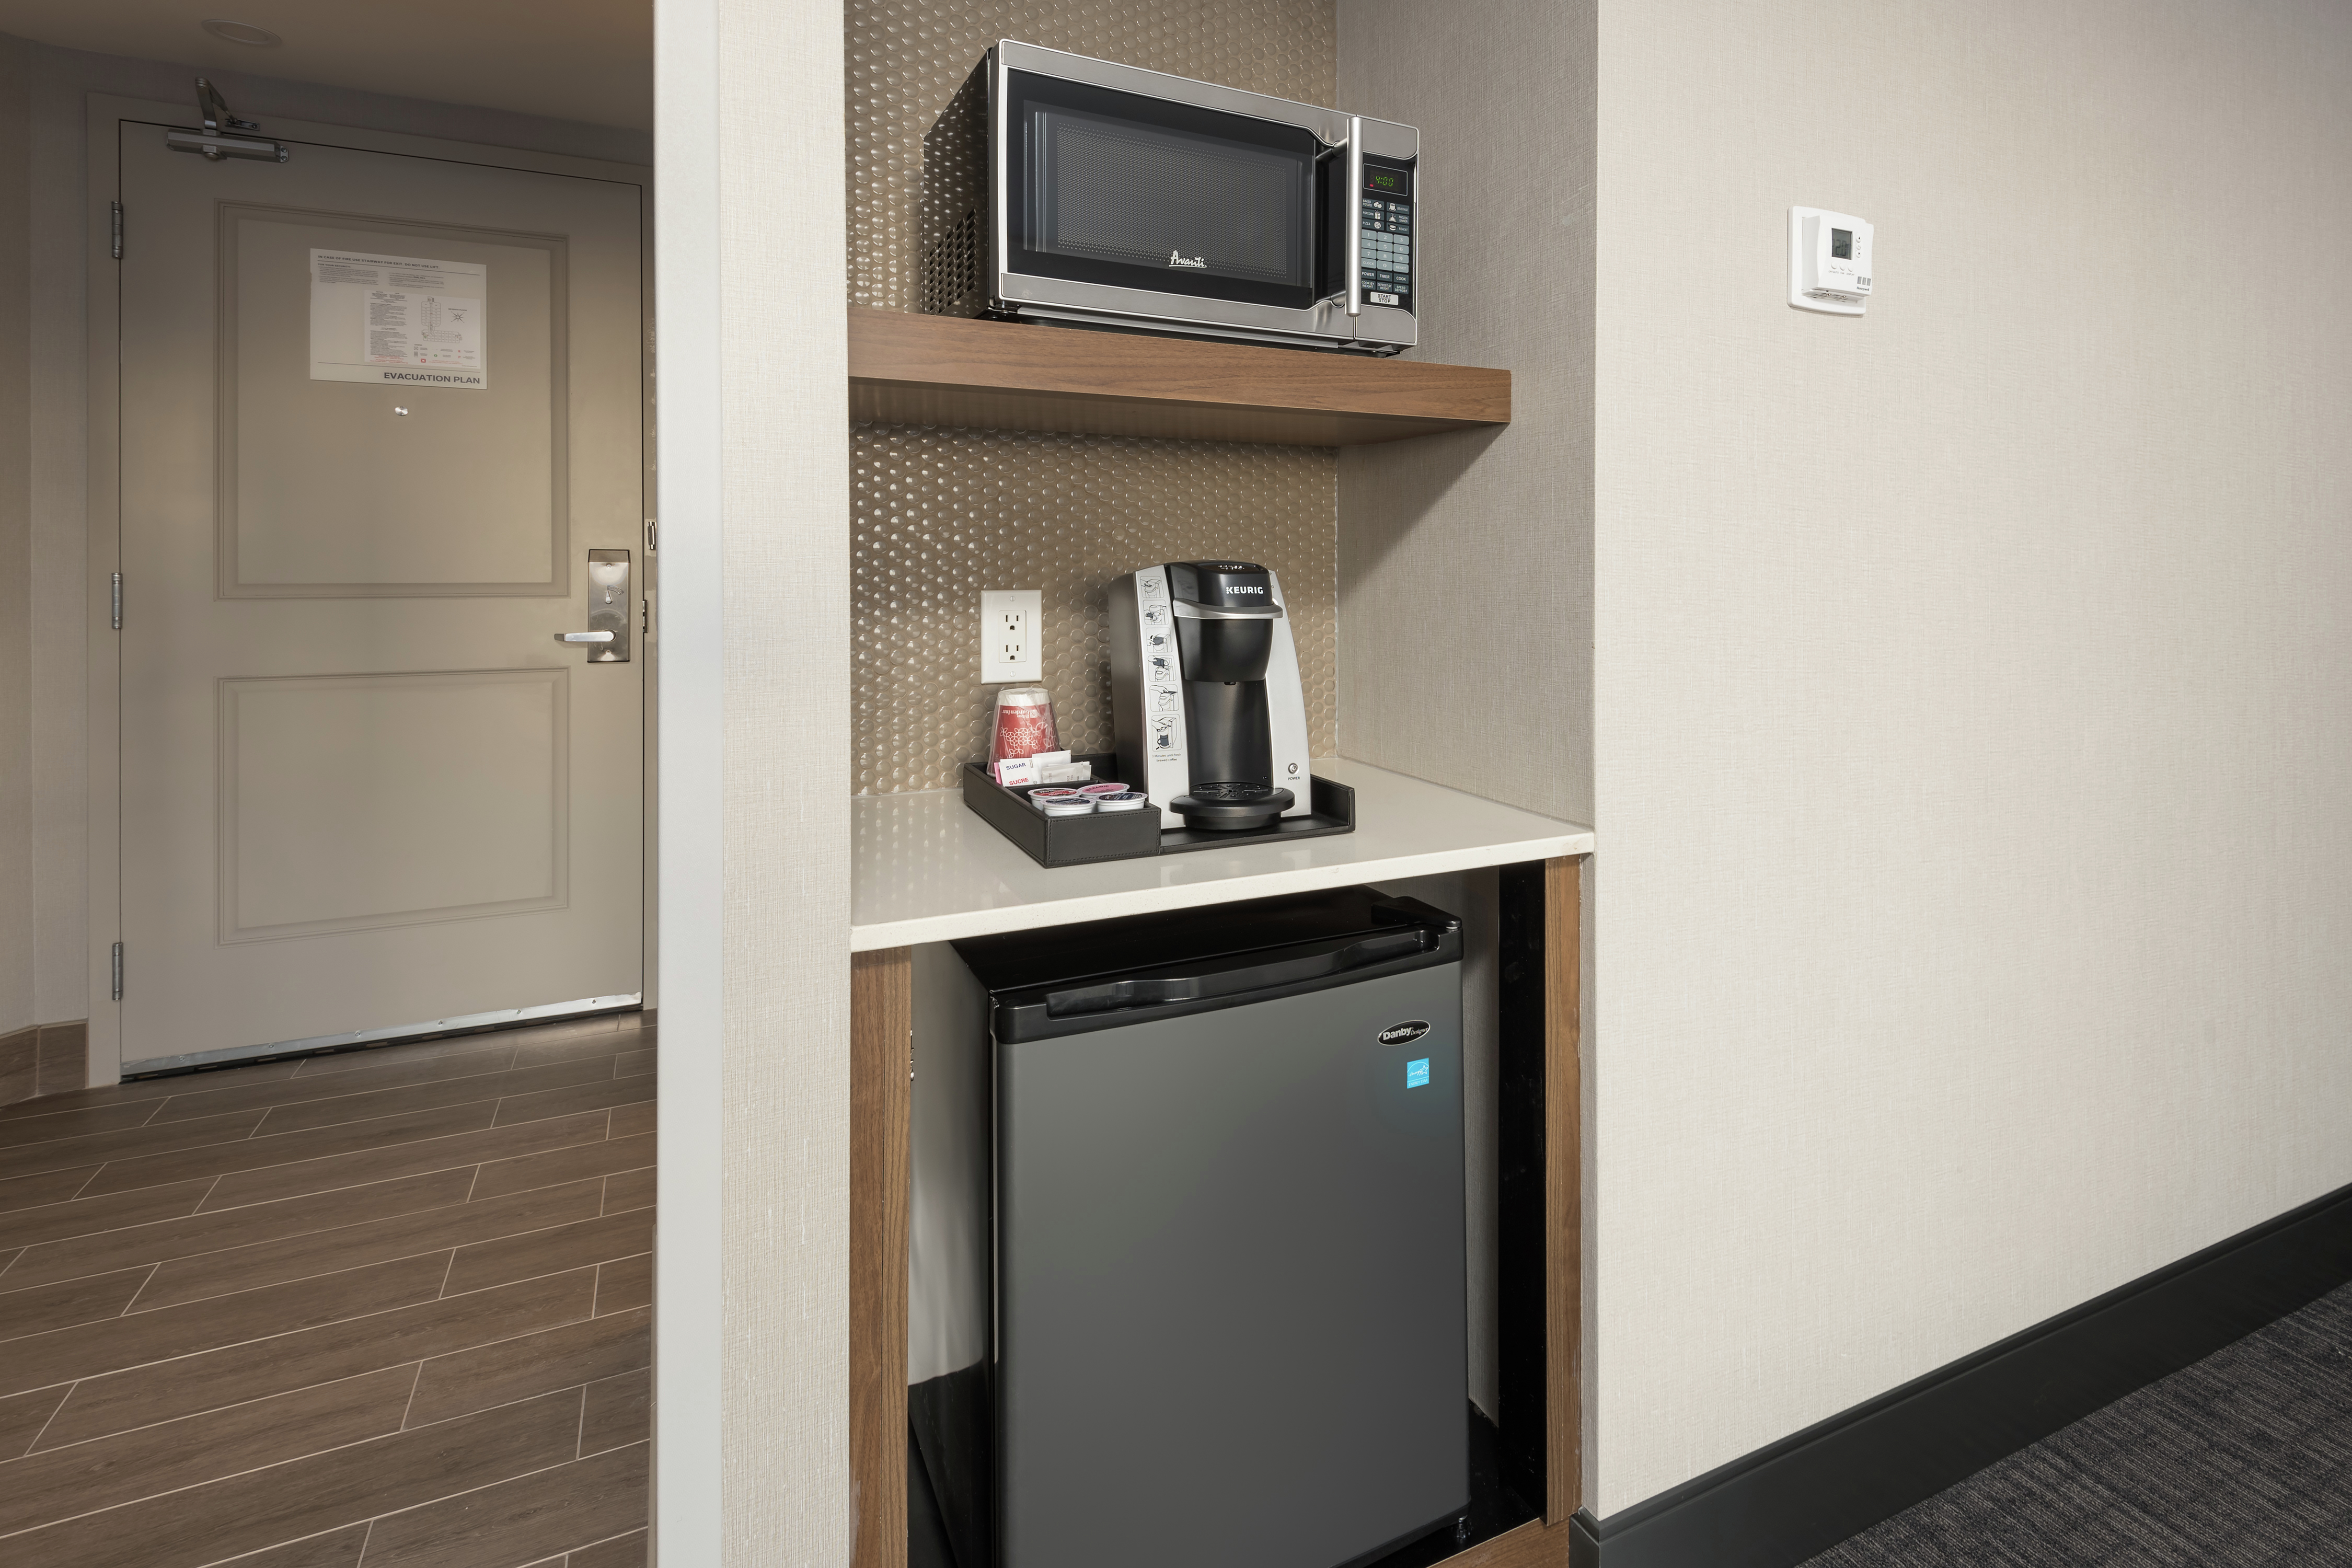 Espace de rangement ouvert révélant un réfrigérateur, un four à micro-ondes et une cafetière